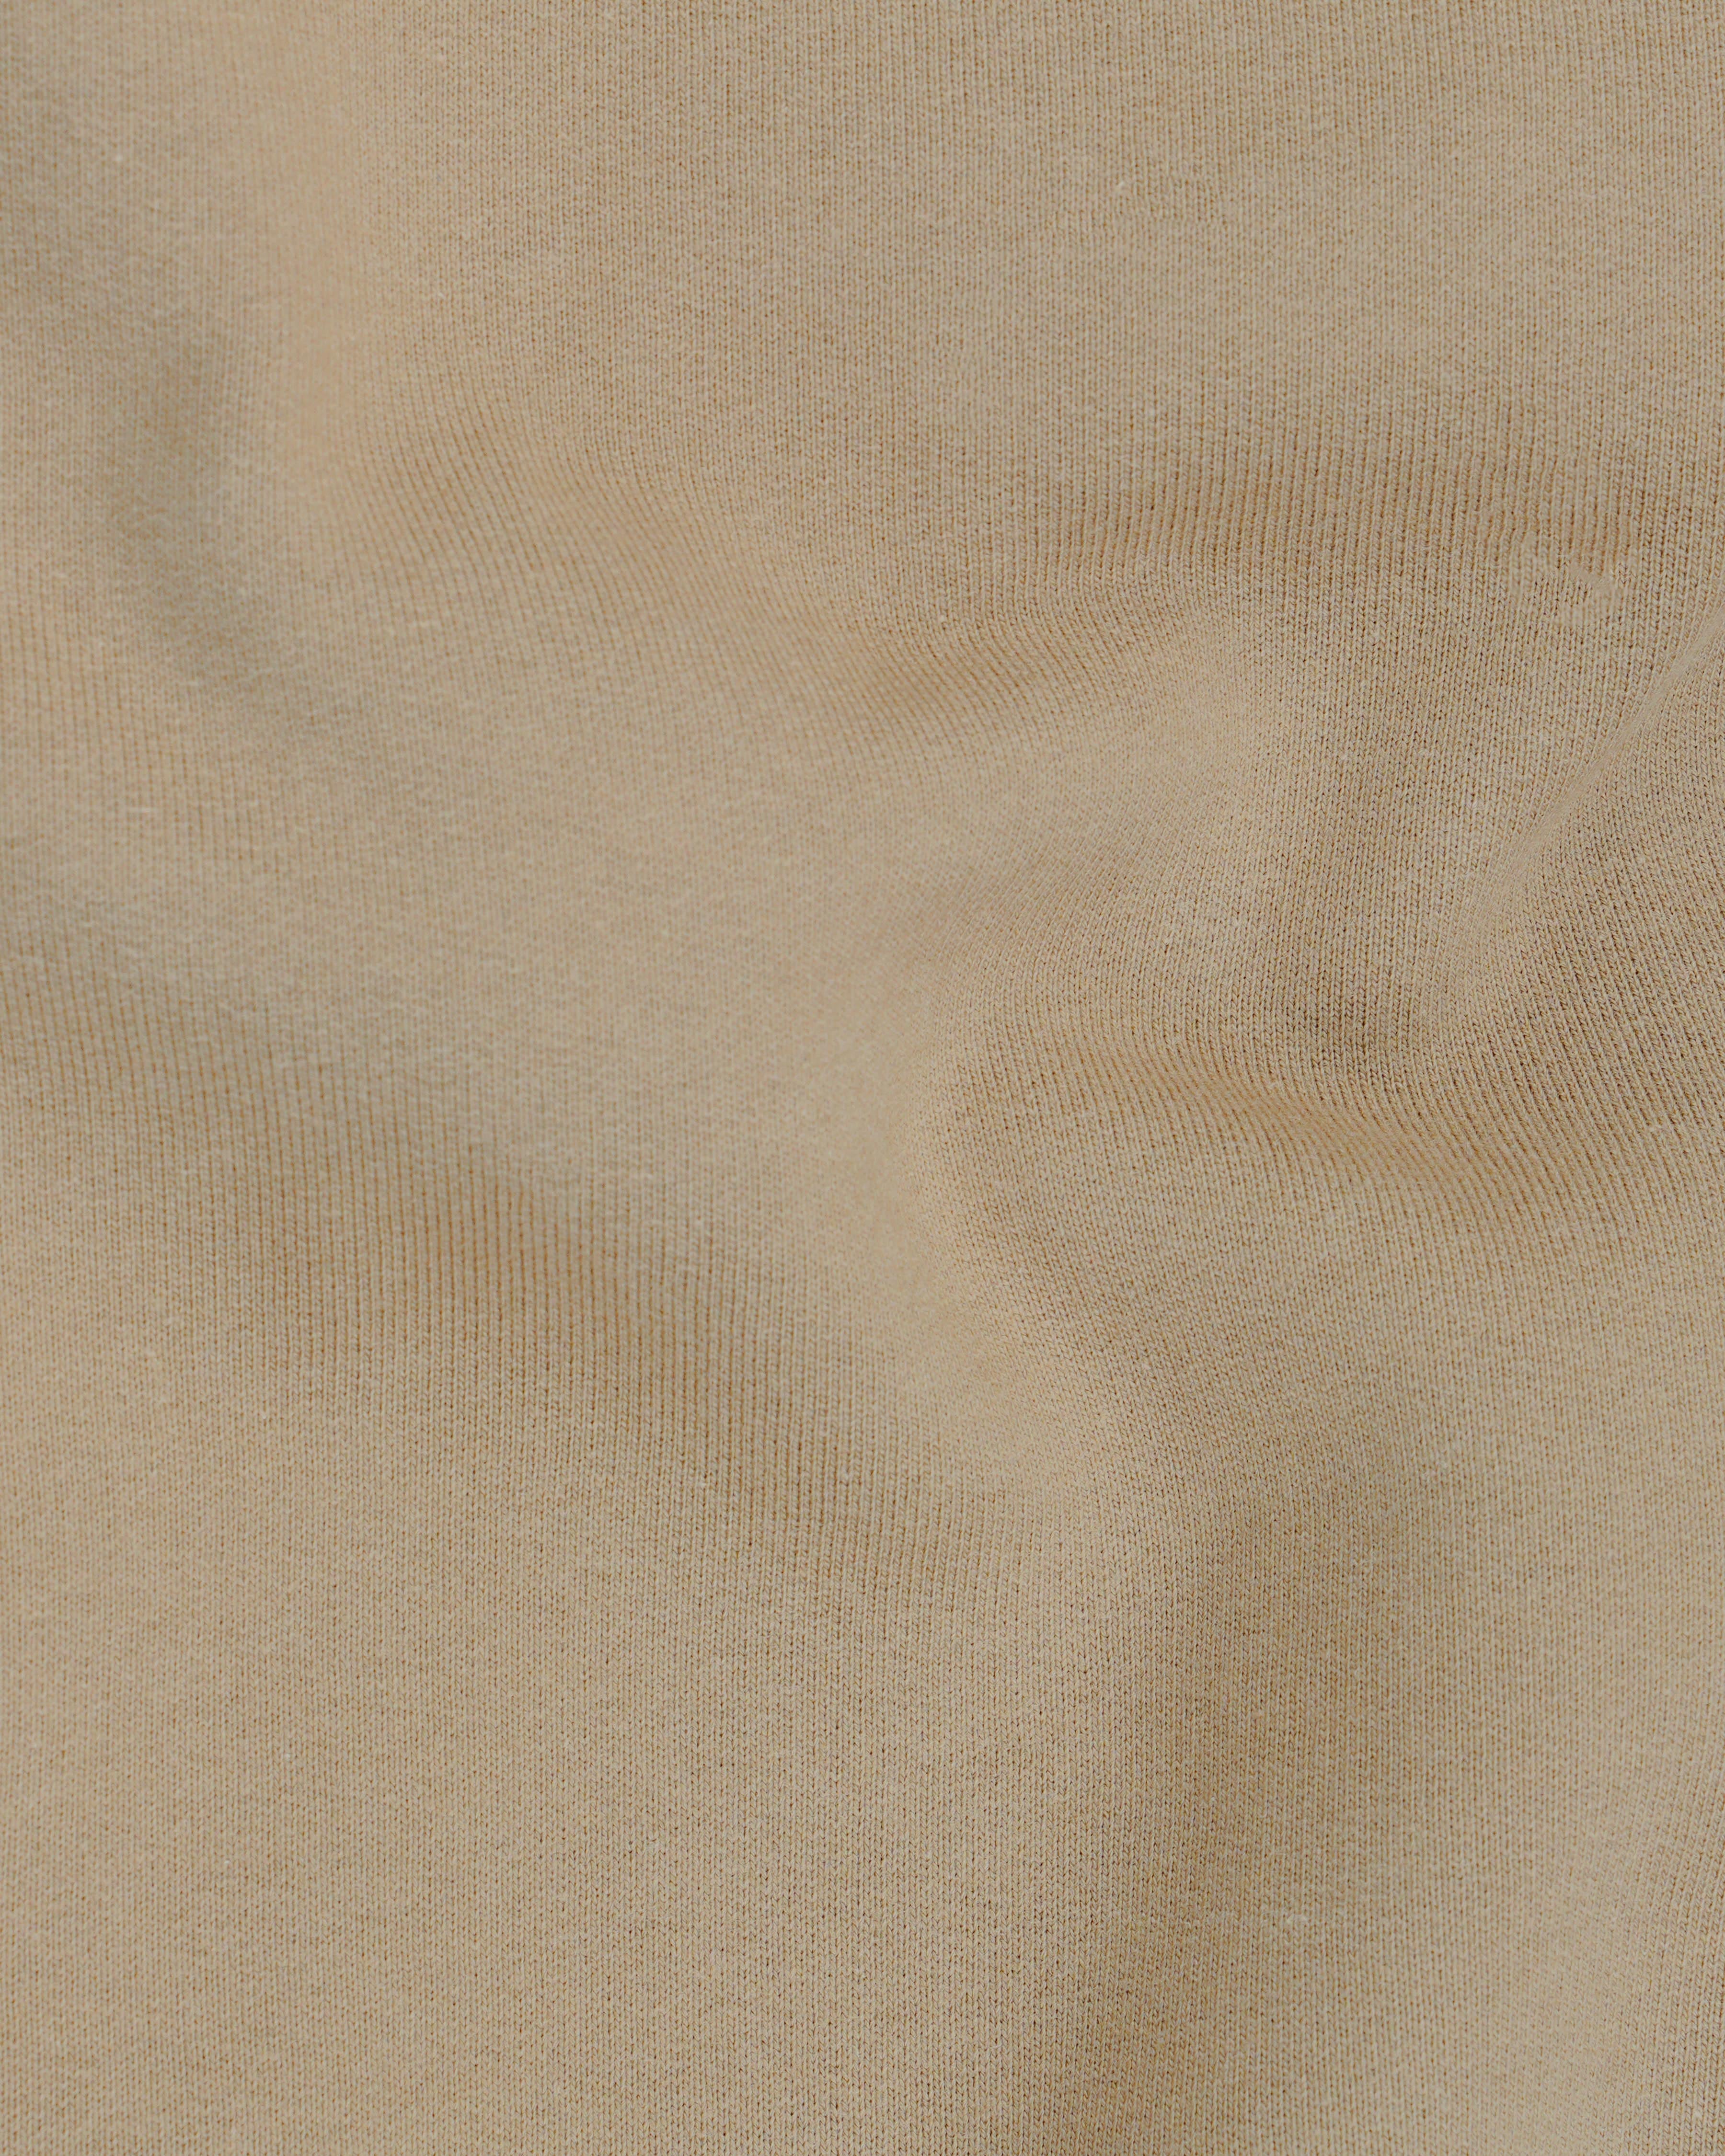 Sandrift Brown Premium Cotton Sweatshirt with Shorts Combo TS640-SR173-S, TS640-SR173-M, TS640-SR173-L, TS640-SR173-XL, TS640-SR173-XXL